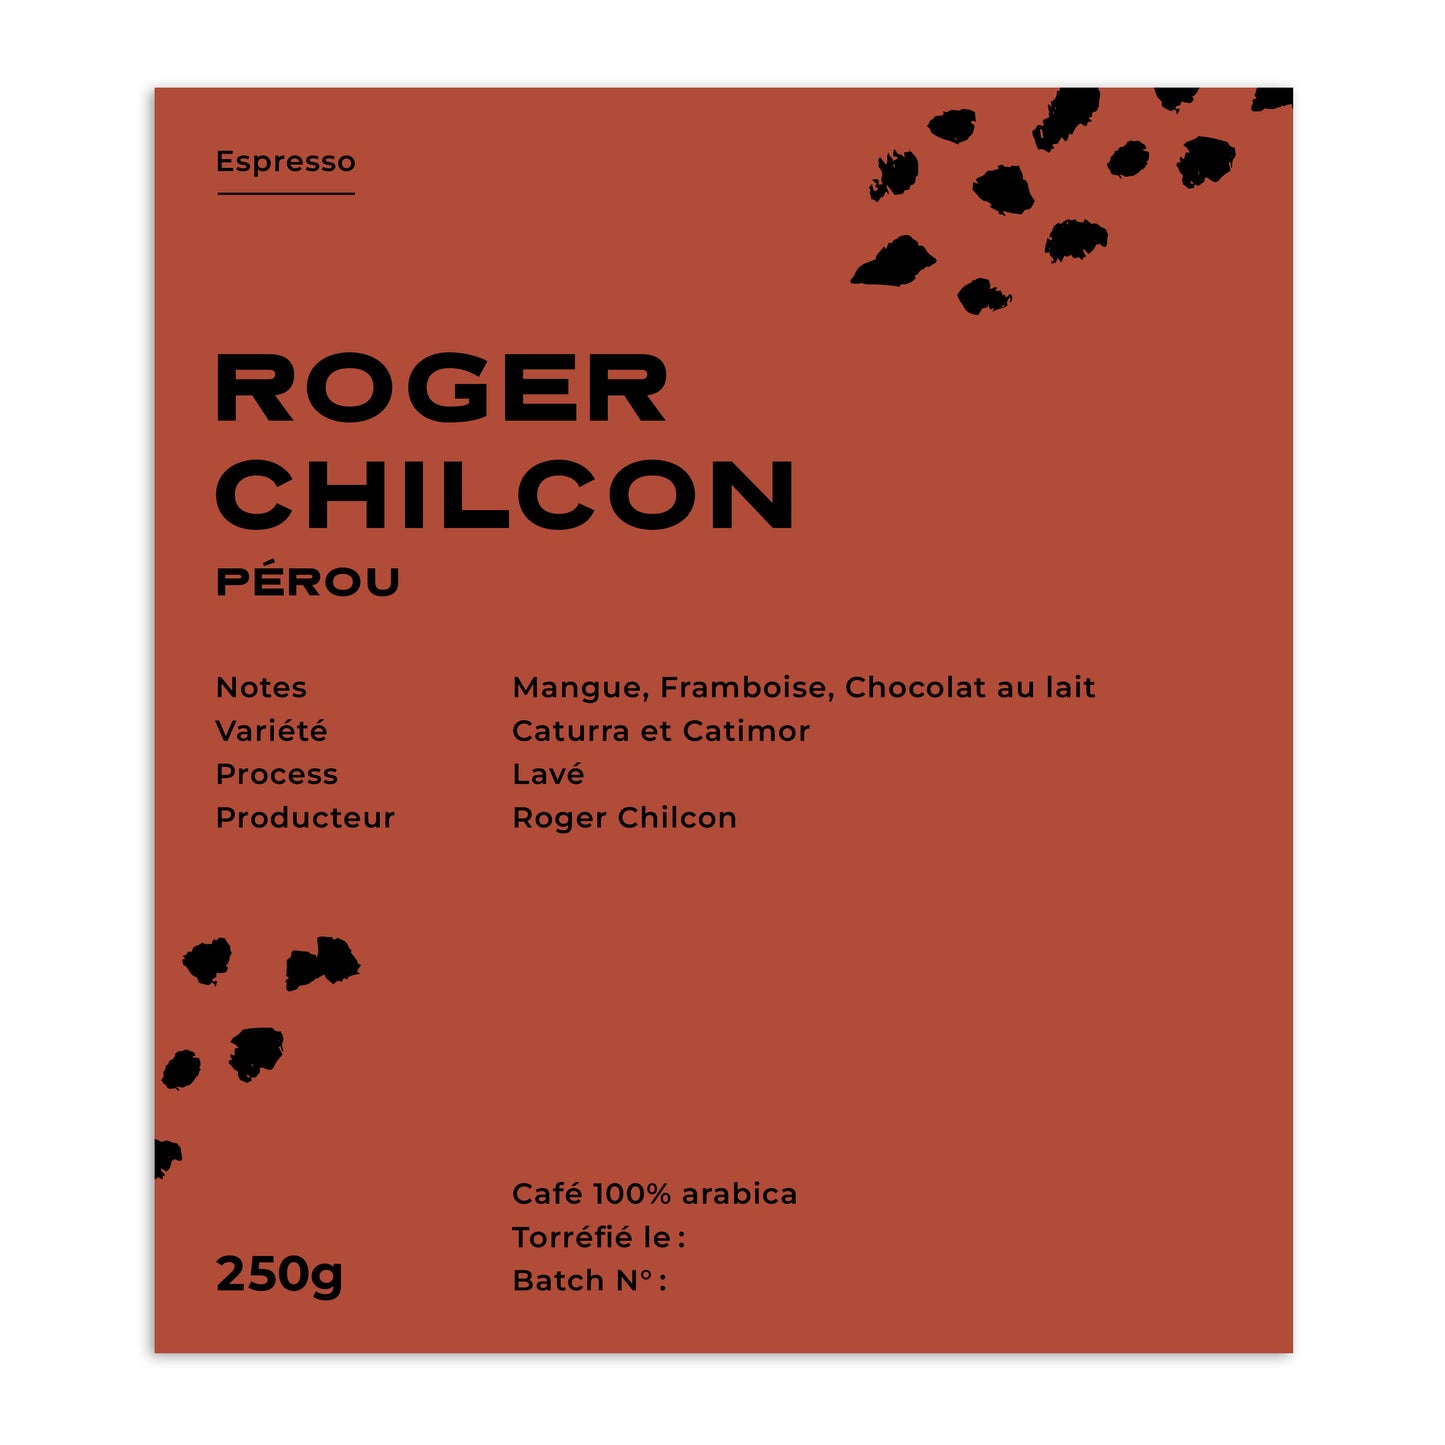 ROGER CHILCON